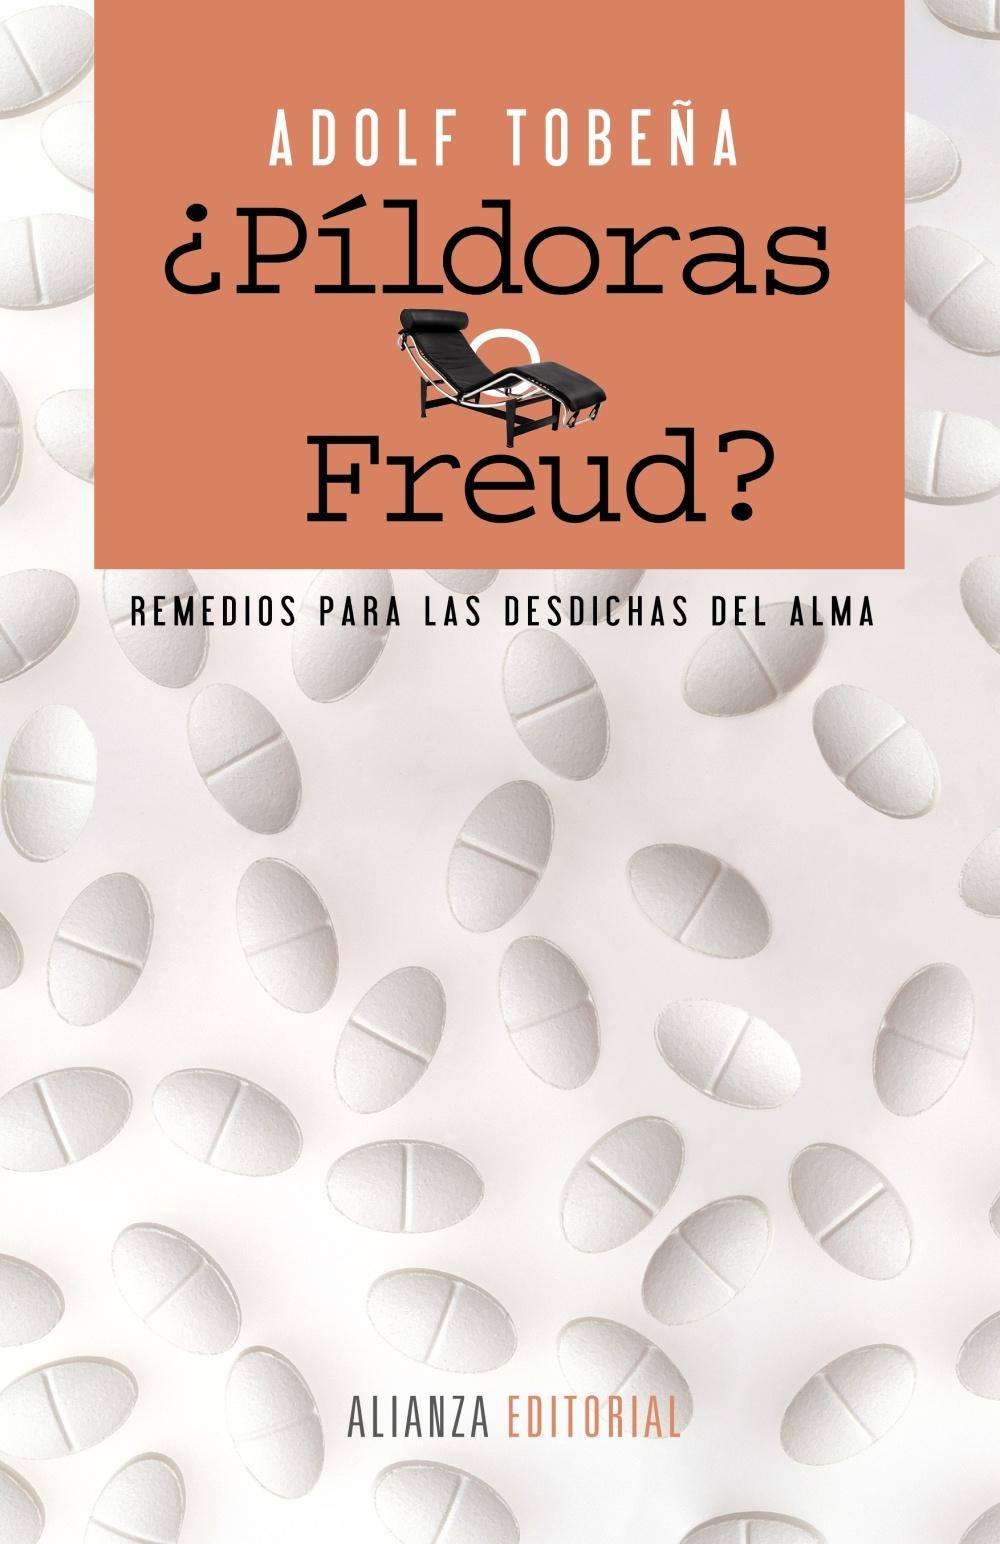 ¿Píldoras o Freud? "Remedios para las Desdichas del Alma"